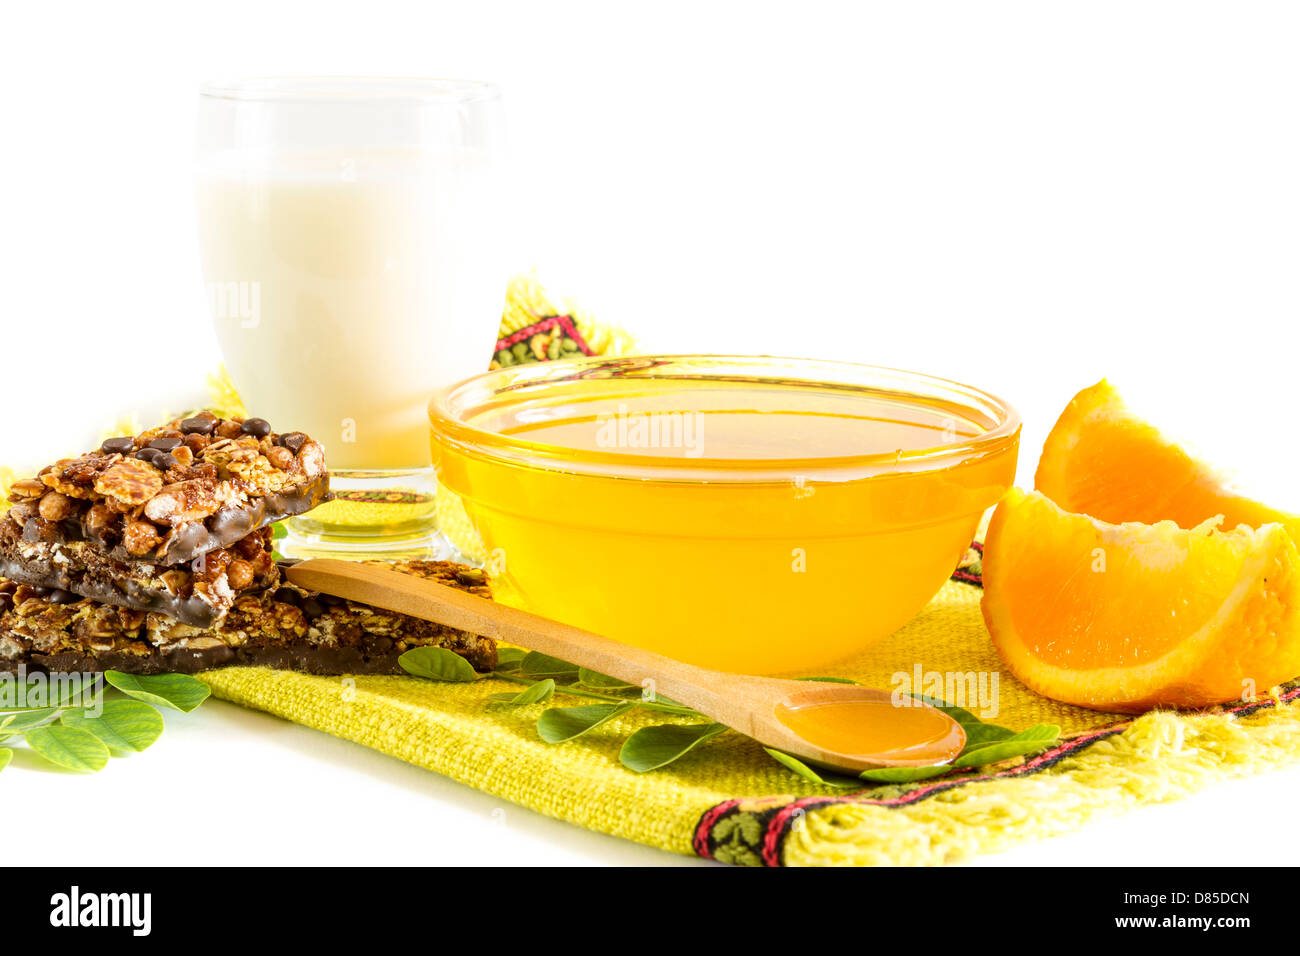 Desayuno saludable con miel, leche y cereales bares Foto de stock